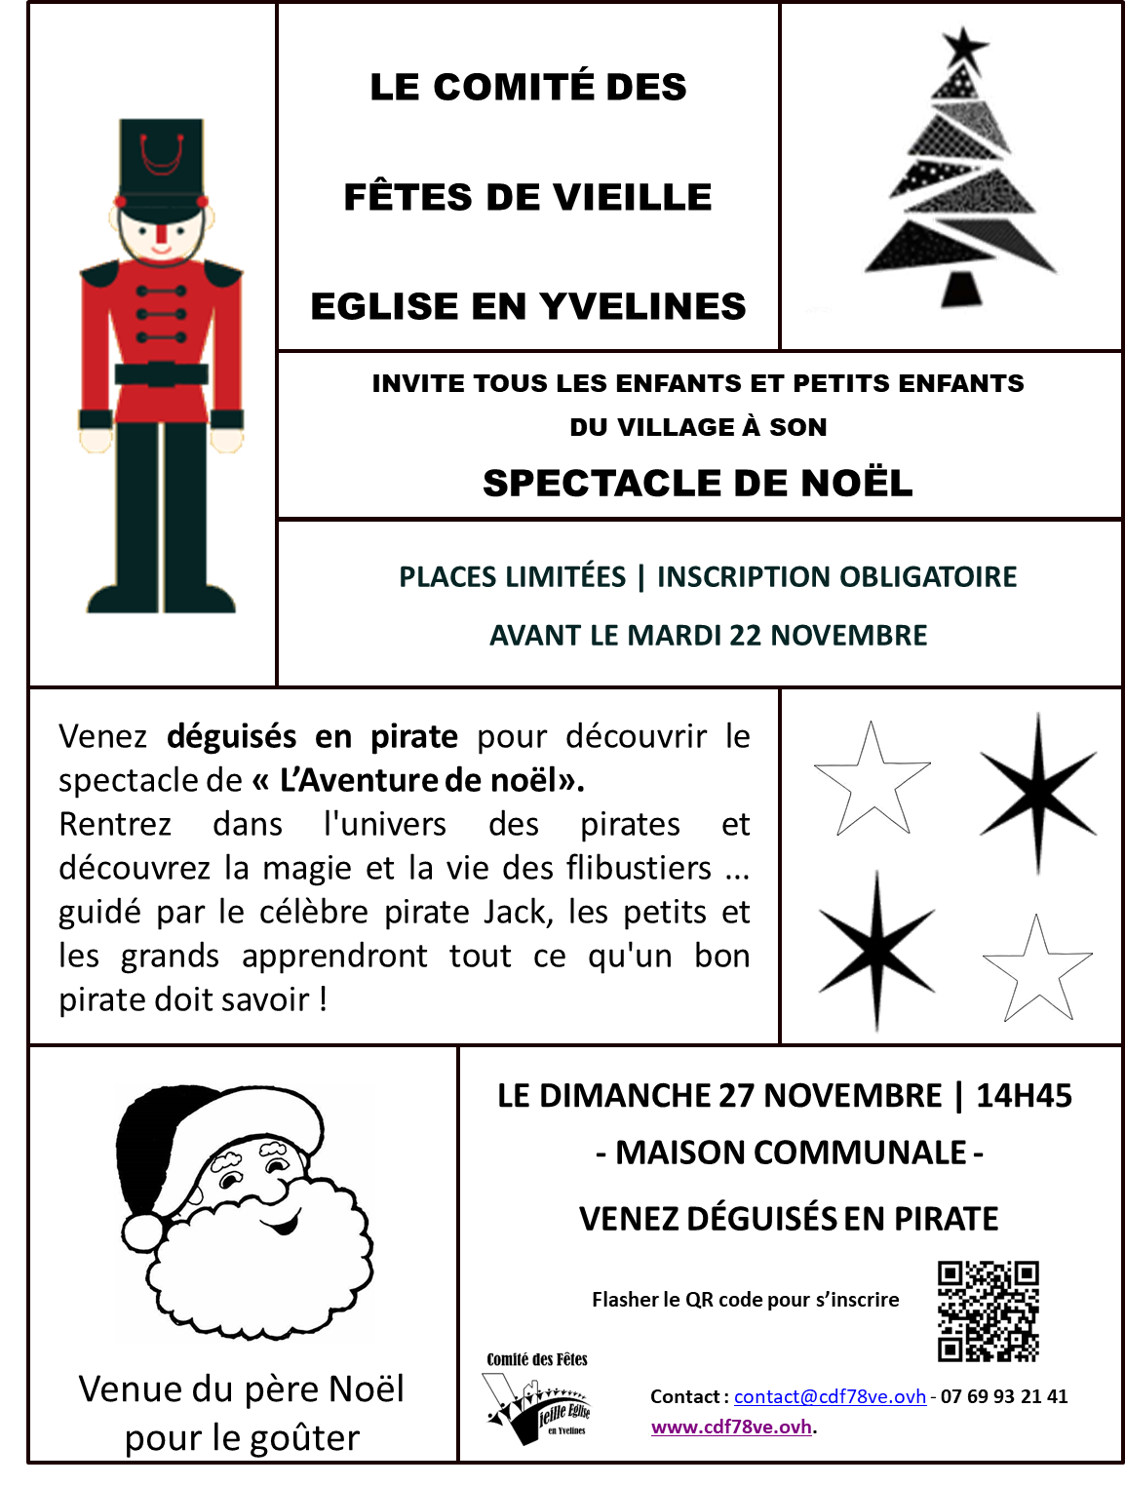 Spectacle de Noël – Comité des Fêtes de Vieille Eglise en Yvelines